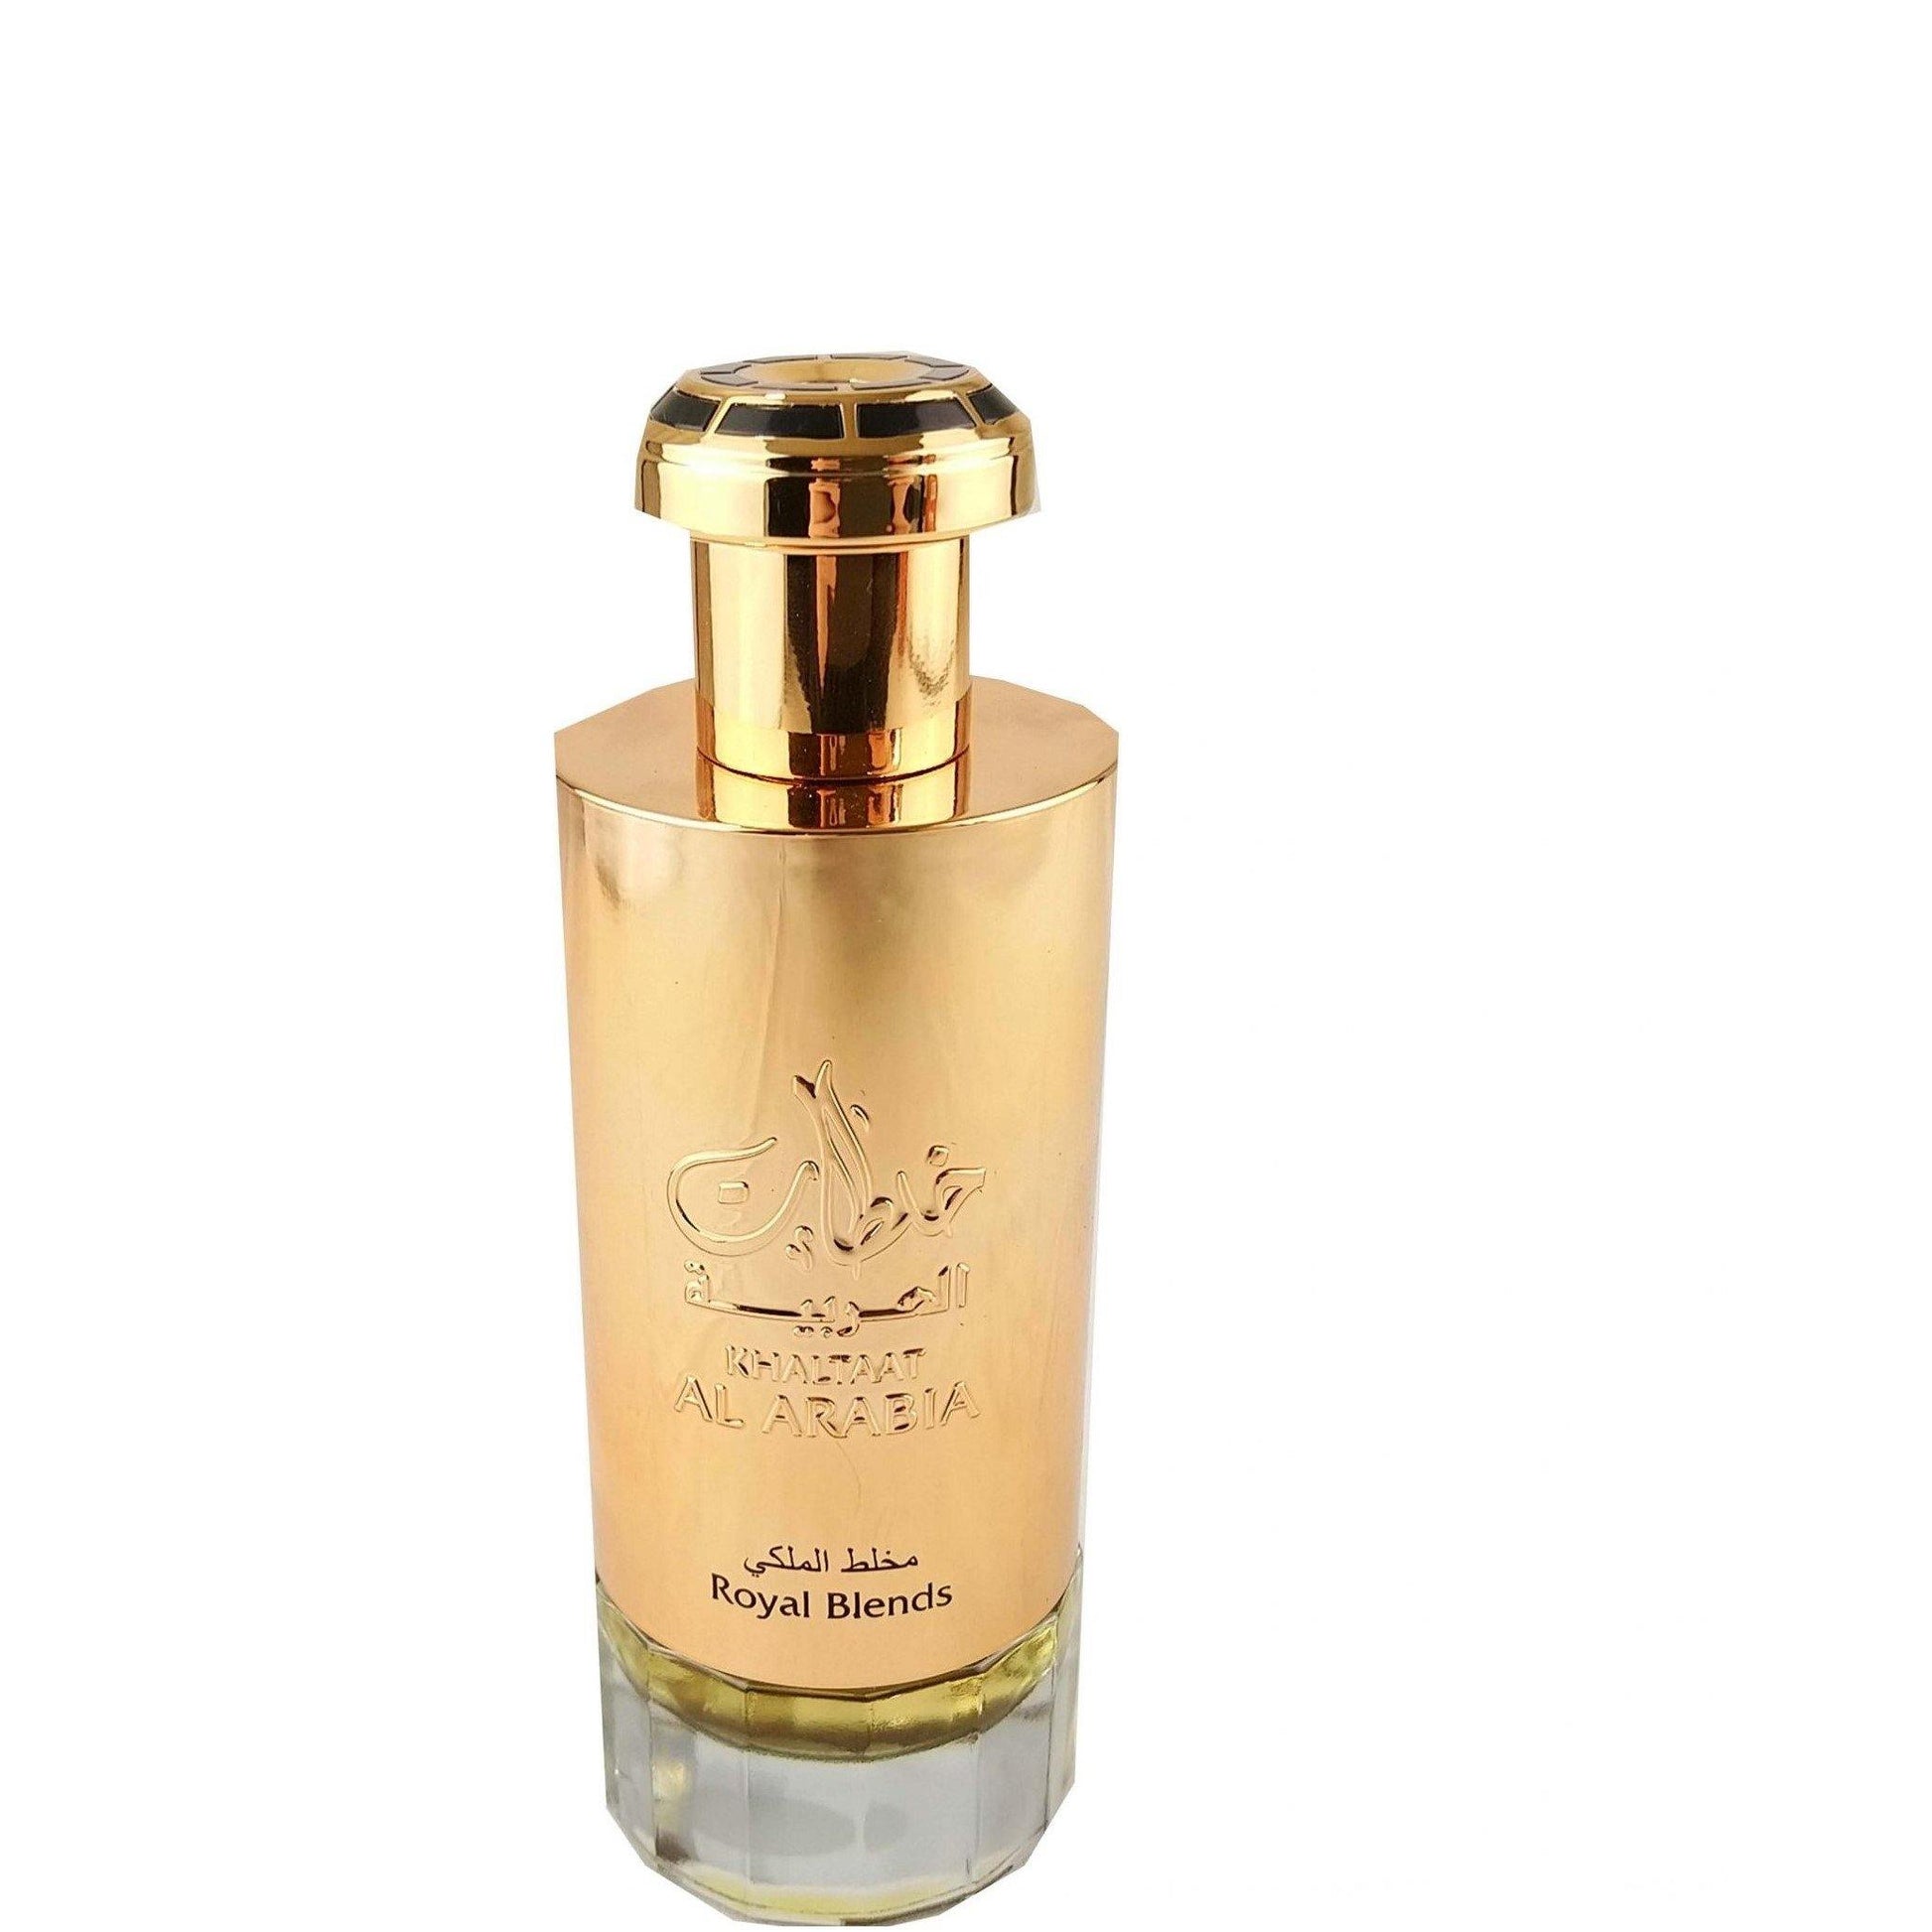 100 ml Eau de Parfum Khaltaat Al Arabia- Royal Blends Friss Keleti Illat Citrussal Férfiaknak és Nőknek - Ékszer TV